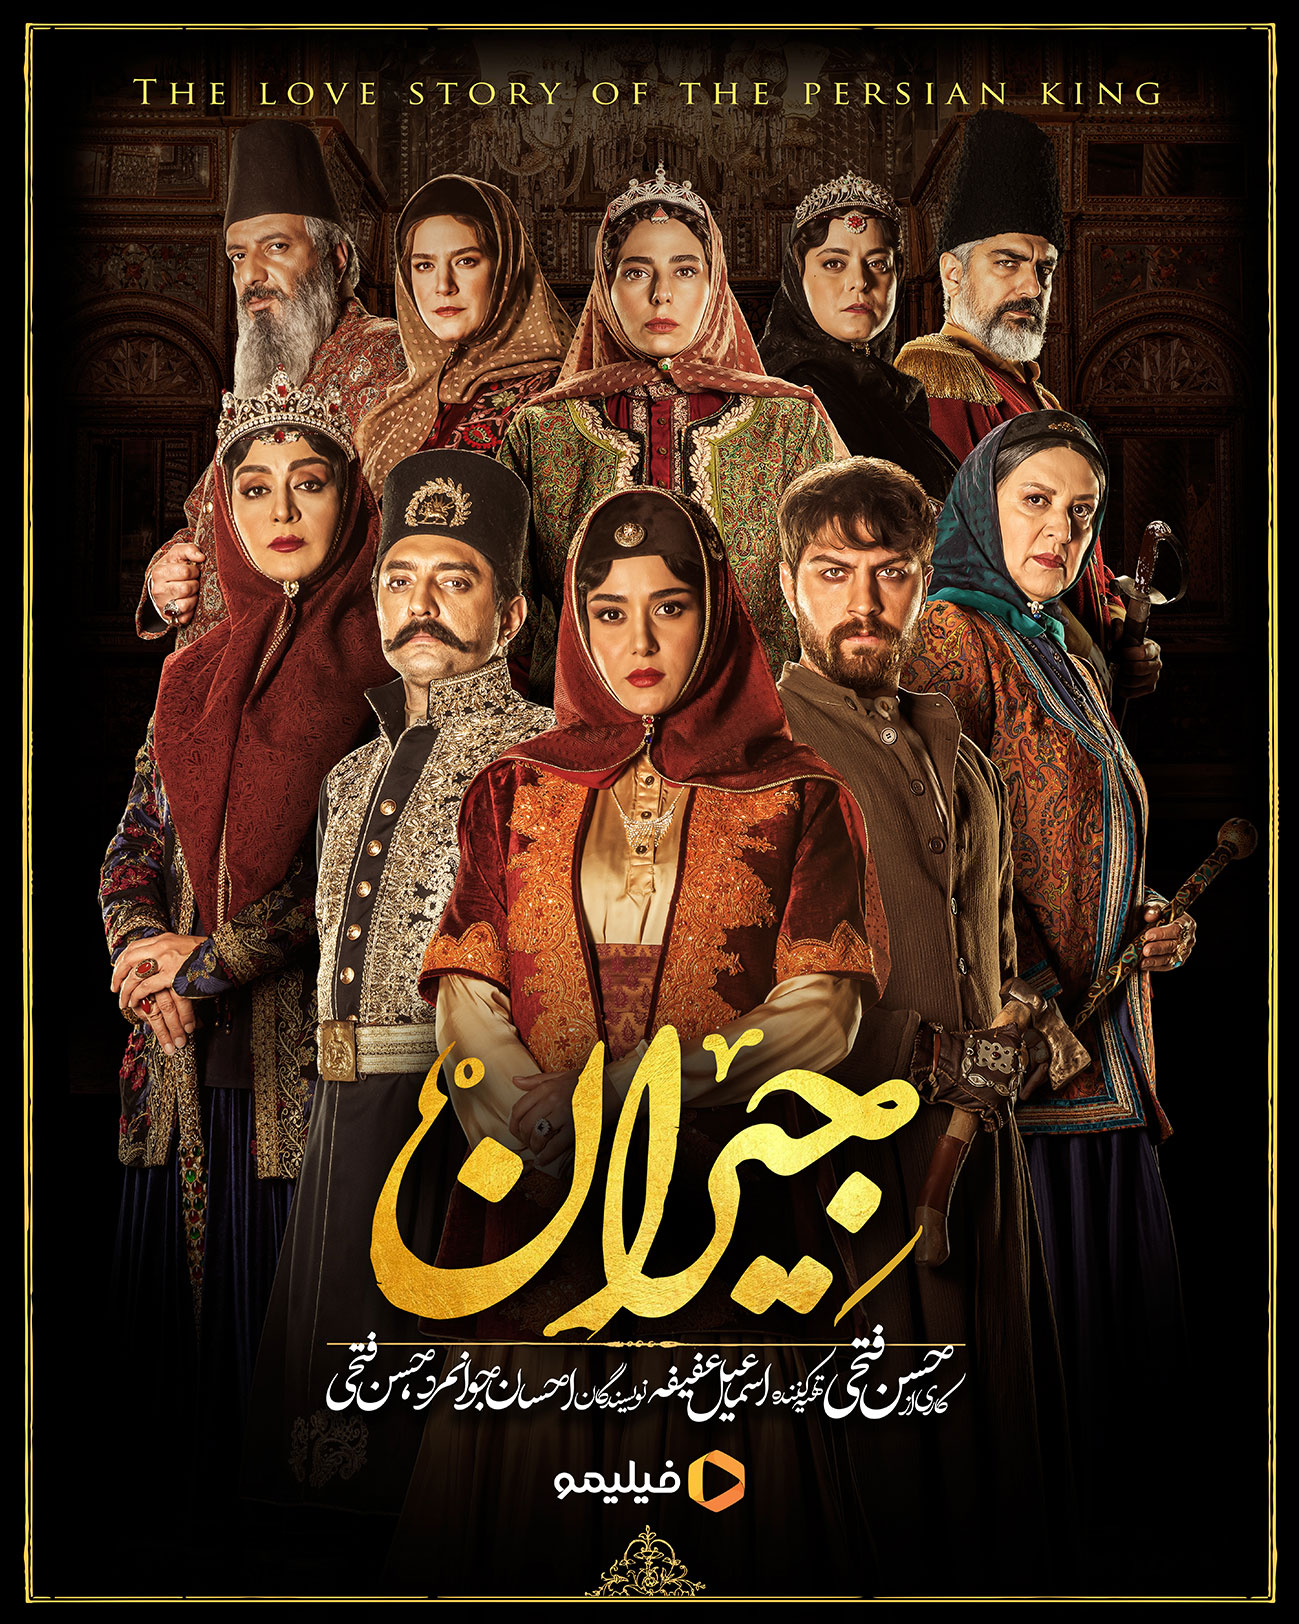 پوستر رسمی سریال جریان حسن فتحی